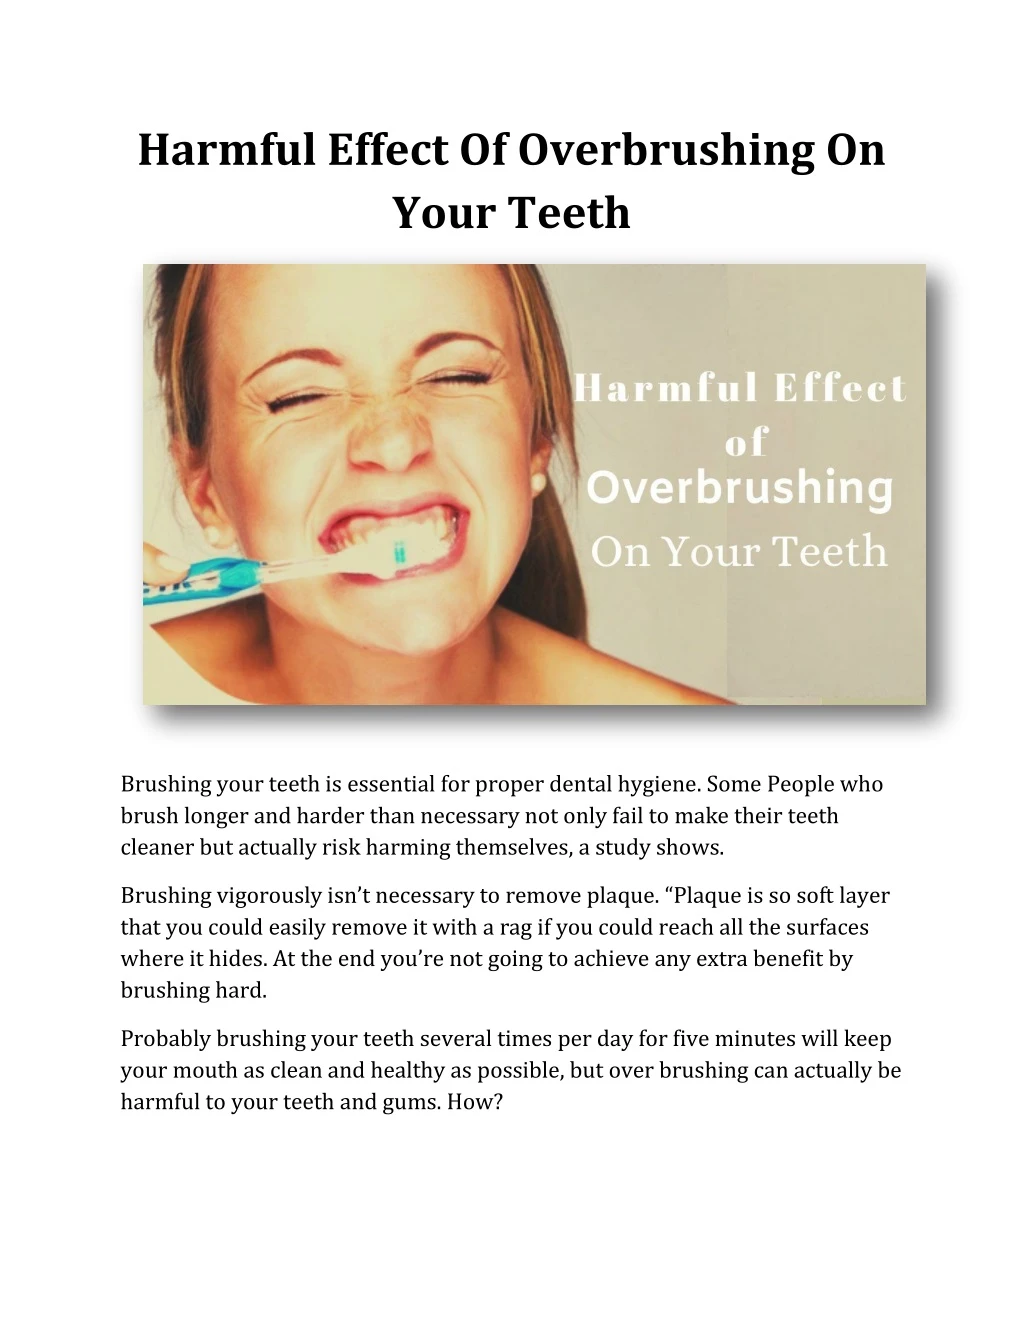 harmful effect of overbrushing on your teeth